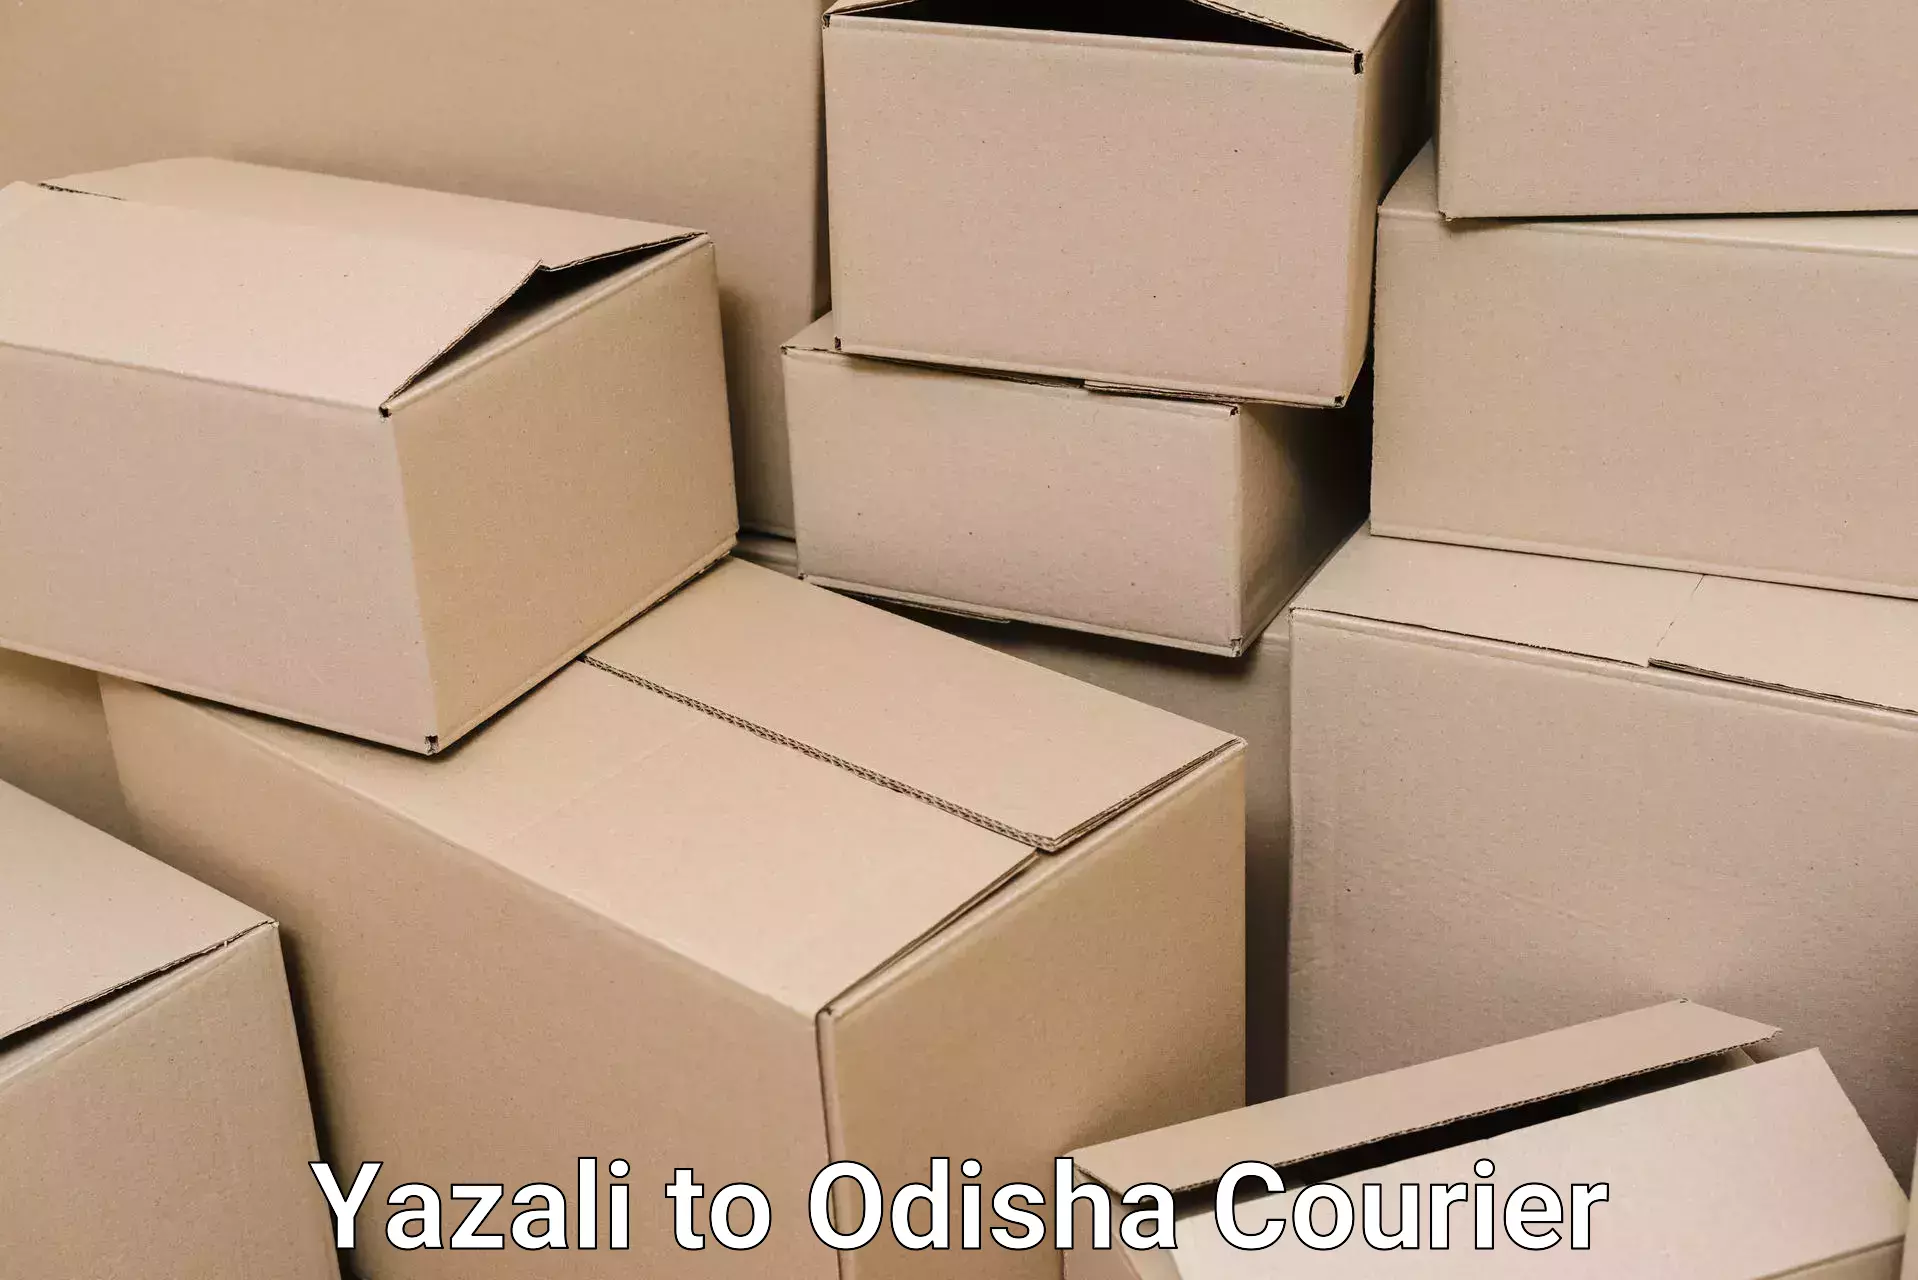 Moving and handling services Yazali to Odisha